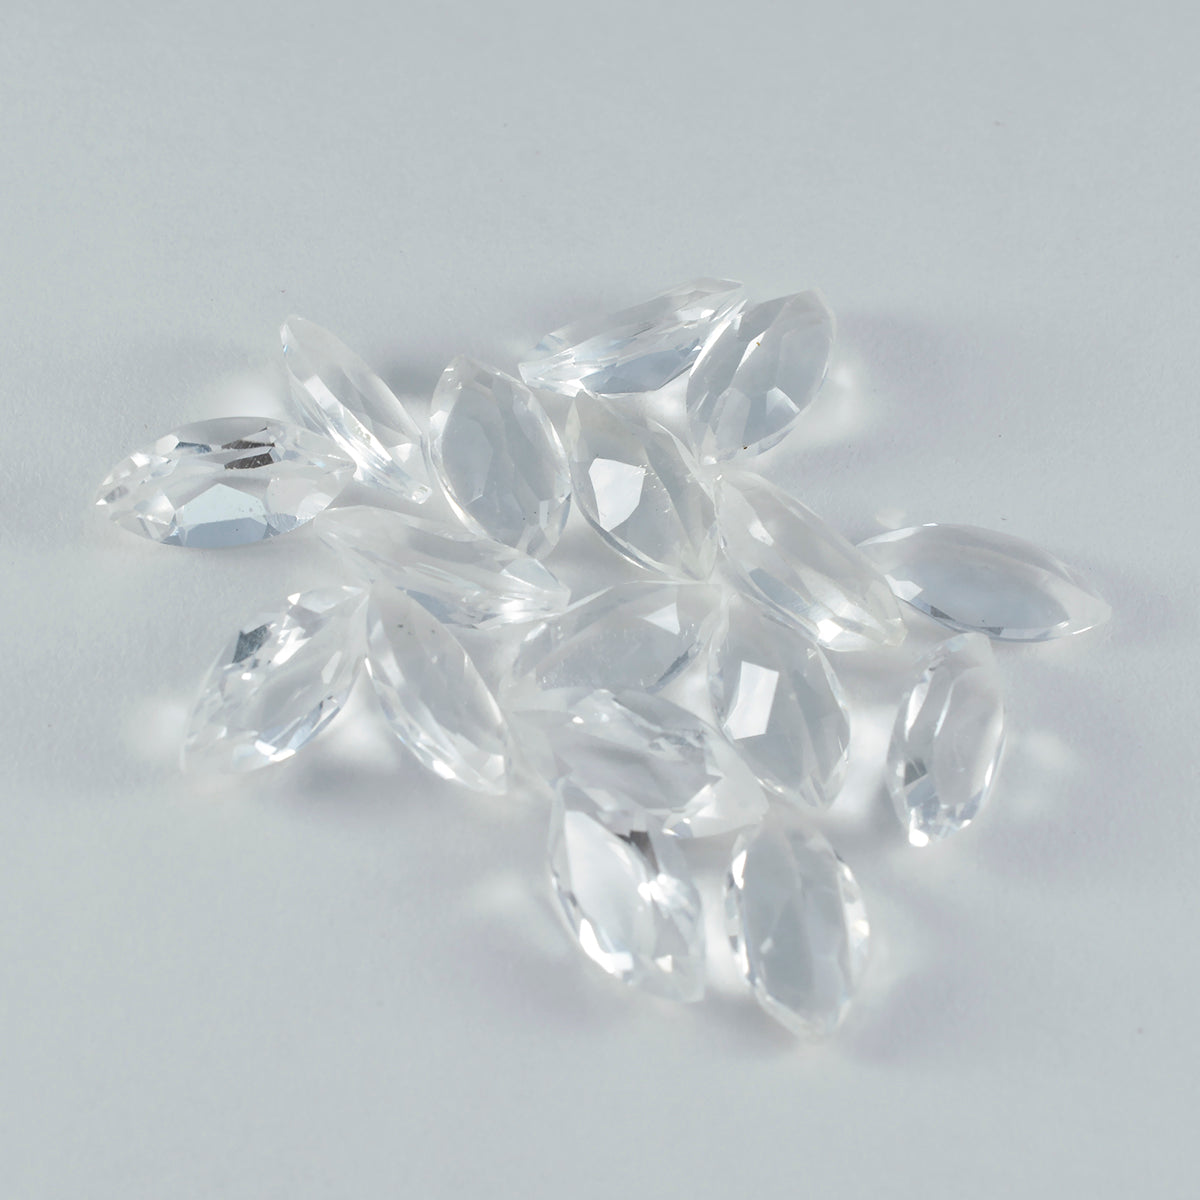 Riyogems 1 Stück weißer Kristallquarz, facettiert, 7 x 14 mm, Marquise-Form, A+1-Qualitätsstein